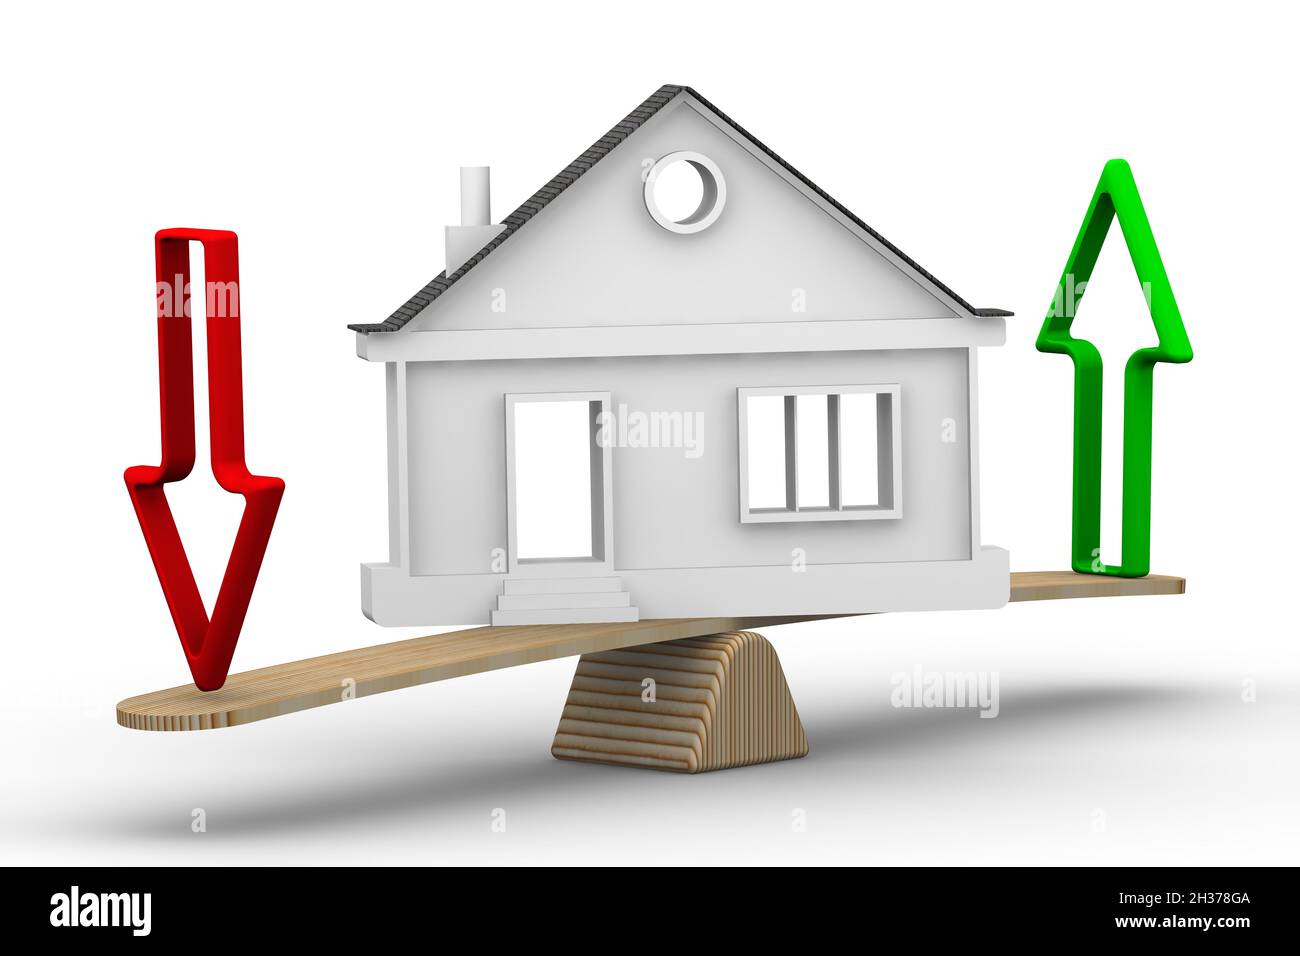 Veränderungen im Wert von Immobilien. Symbolisches Haus mit auf- und Abwärtspfeilen auf der Waage. Die Skalen in der Gleichgewichtsposition Stockfoto